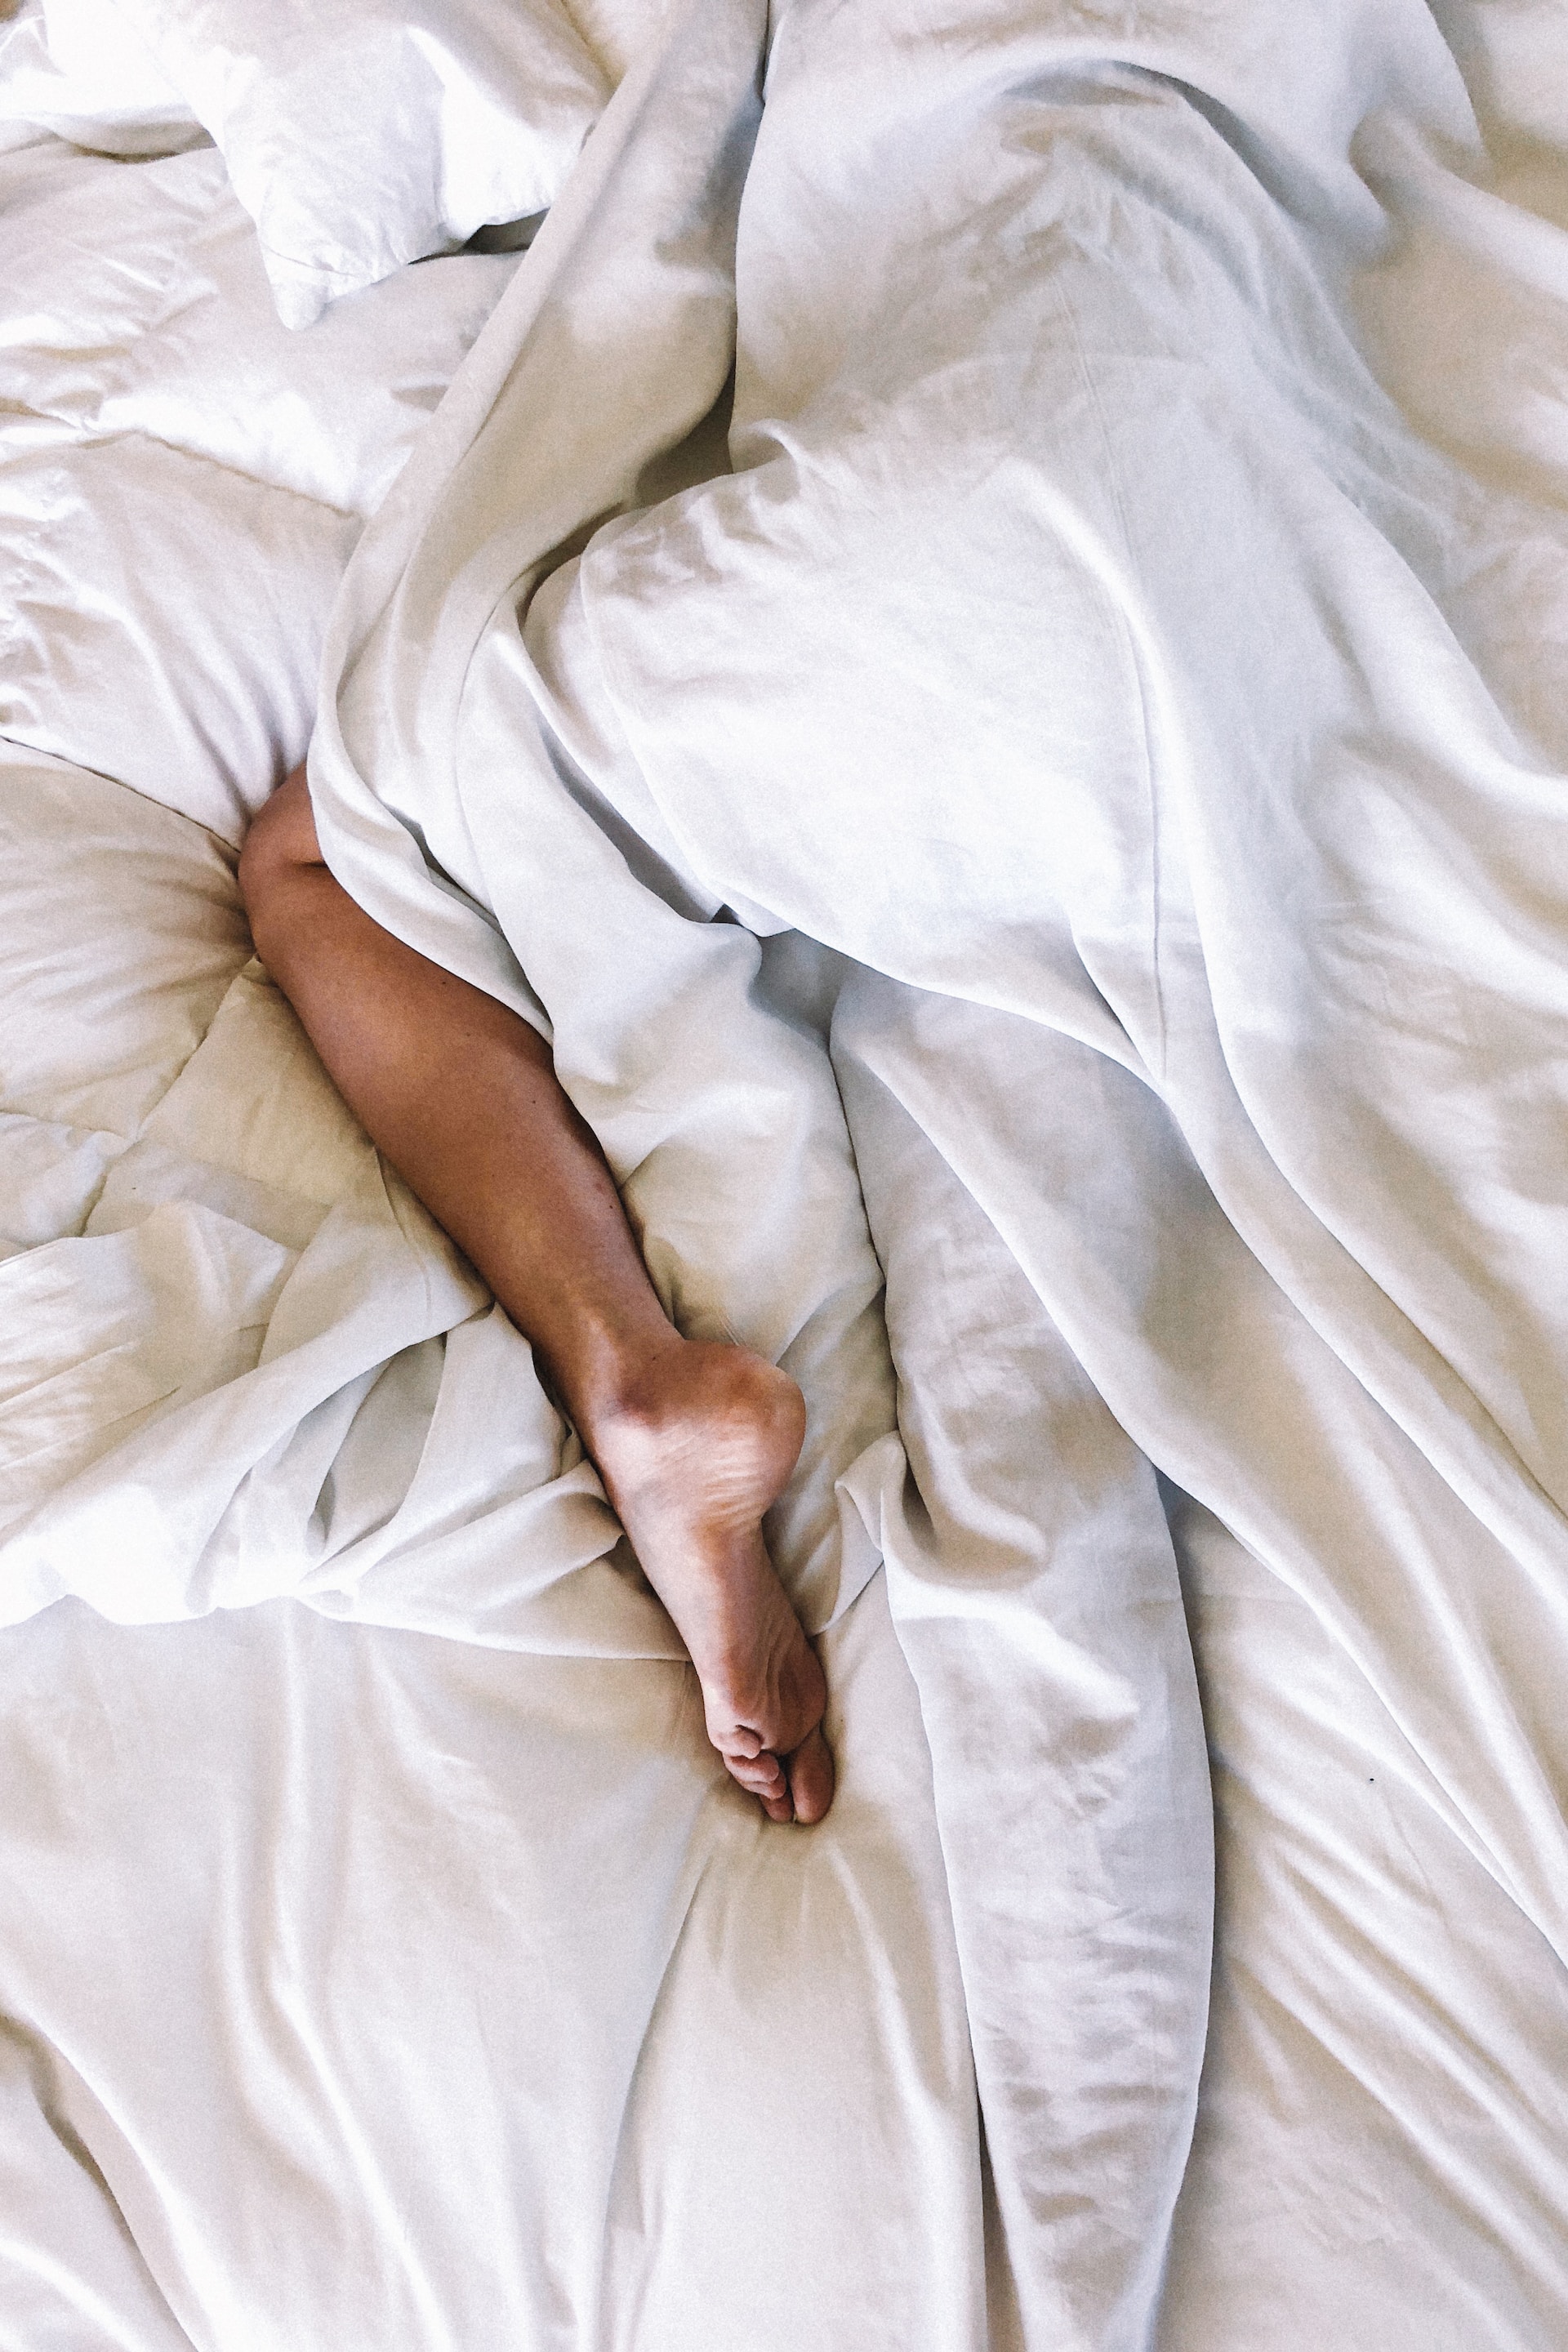 Πόνος στα πόδια που σε εμποδίζει να κοιμηθείς τη νύχτα; Ίσως έχεις το σύνδρομο ανήσυχων ποδιών: